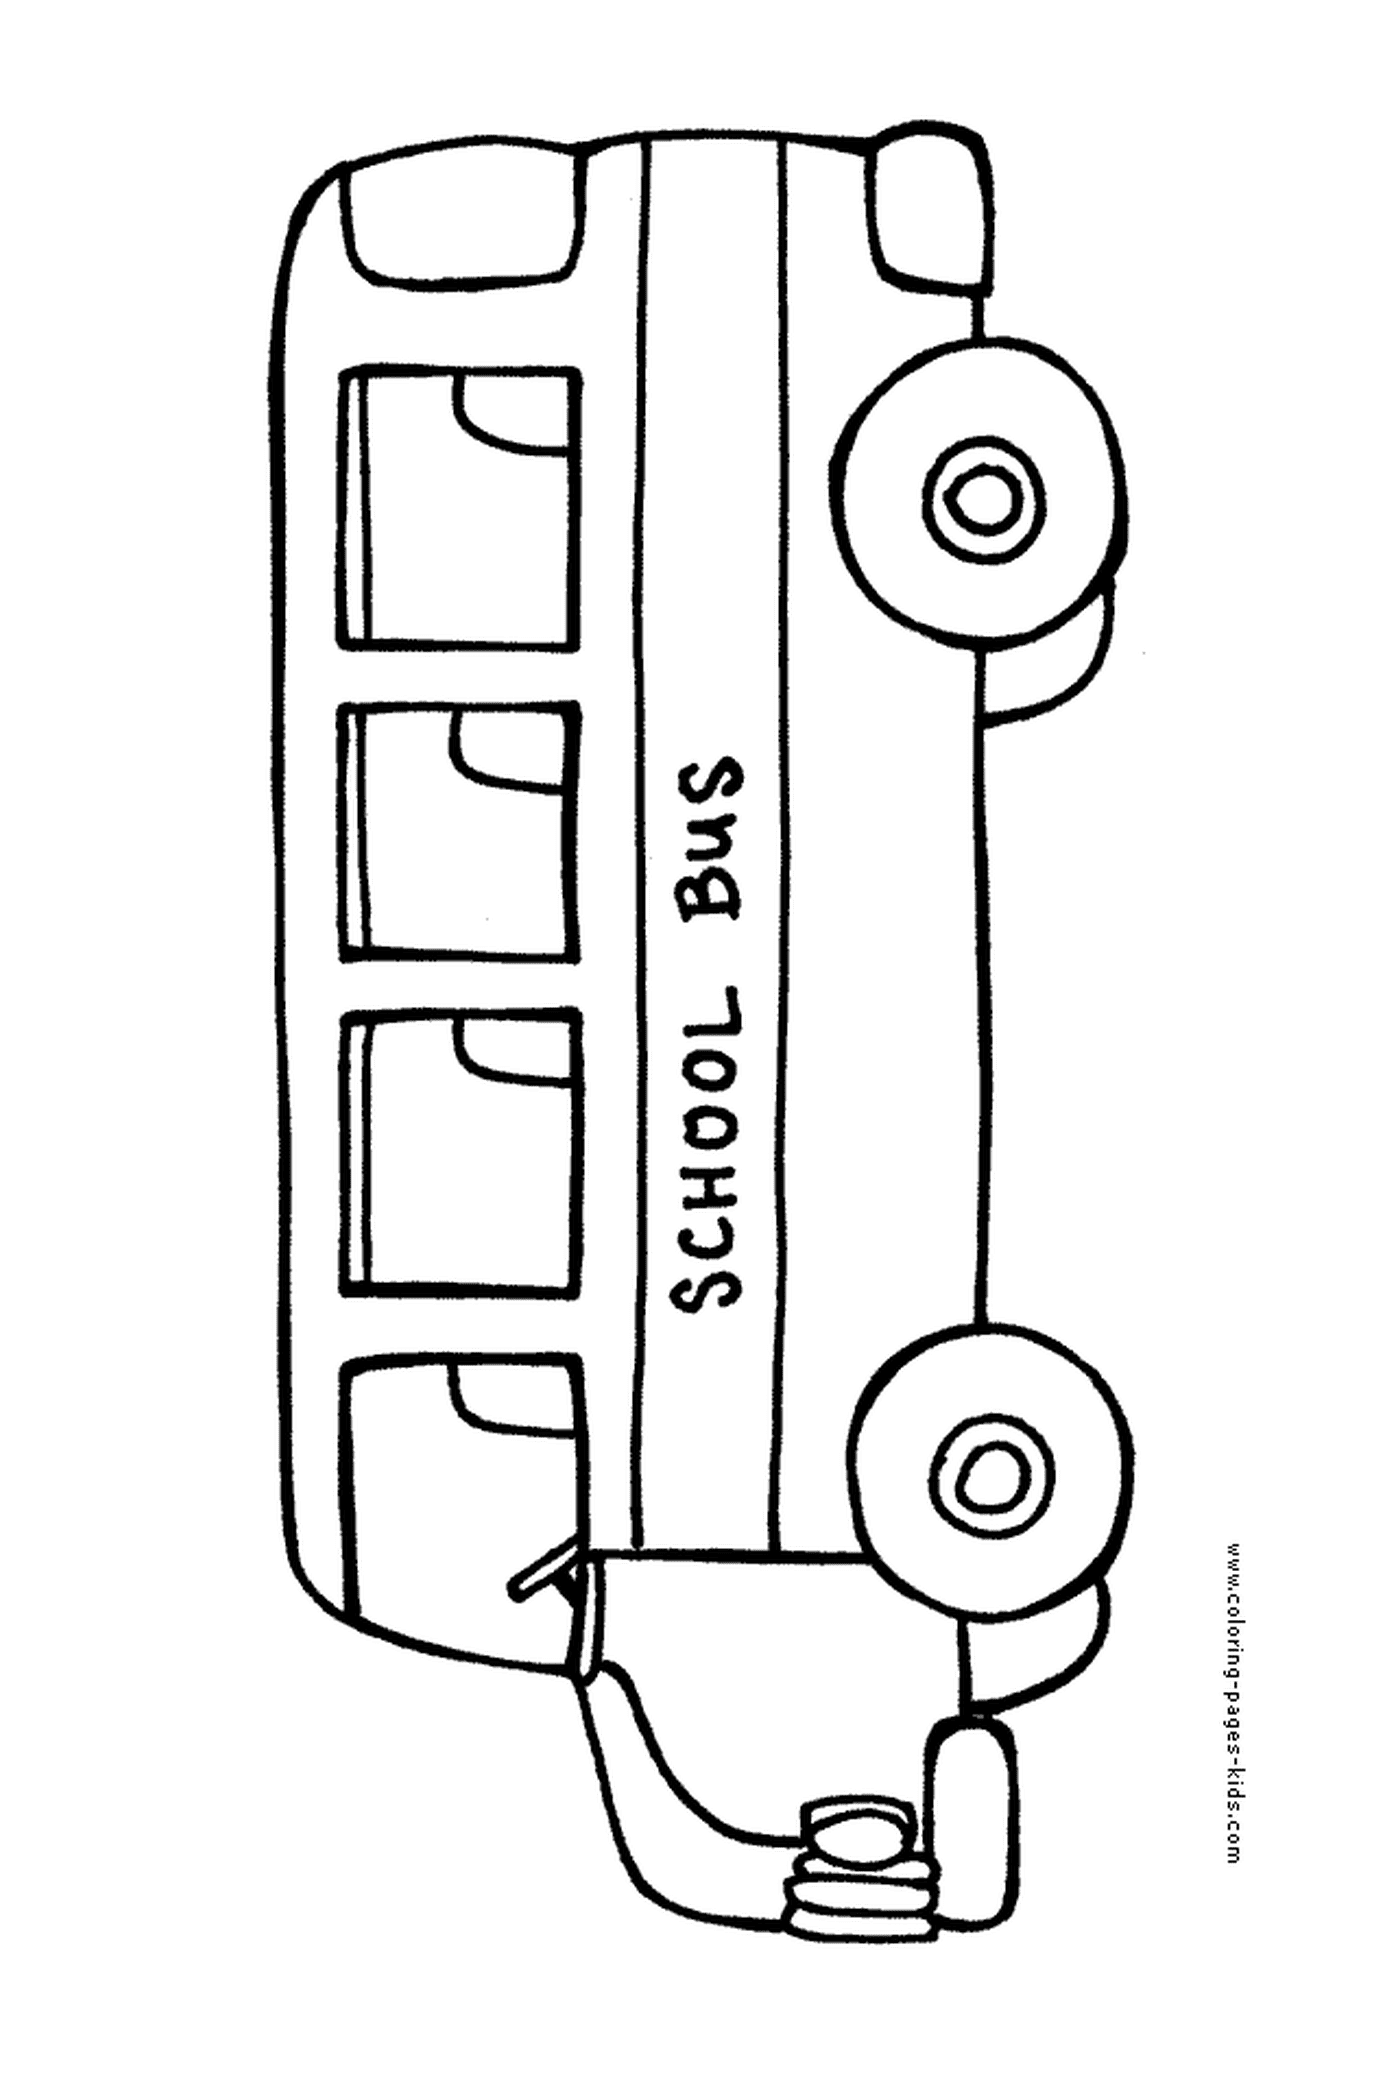  Ein Schulbus bewegt sich langsam 